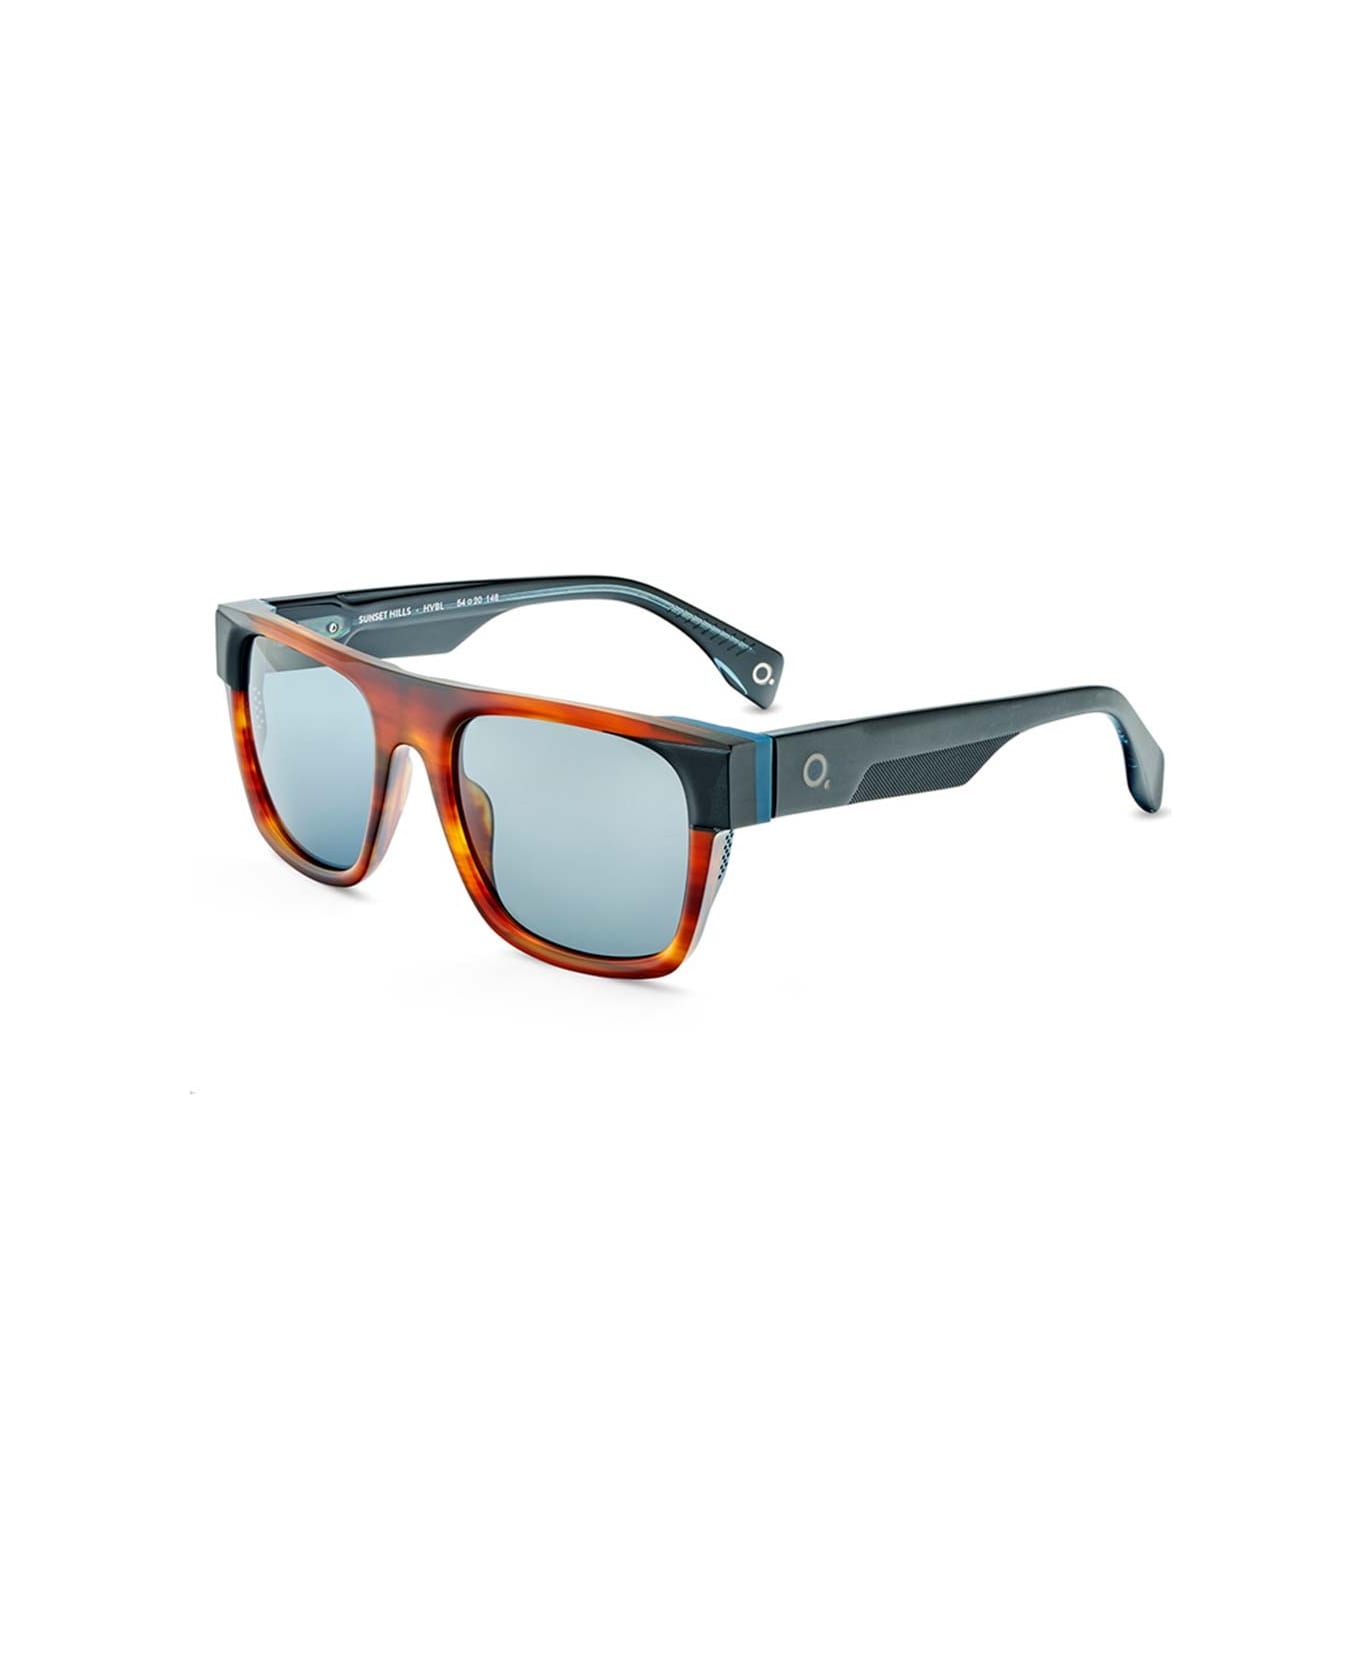 Etnia Barcelona Sunglasses - Multicolor/Grigio